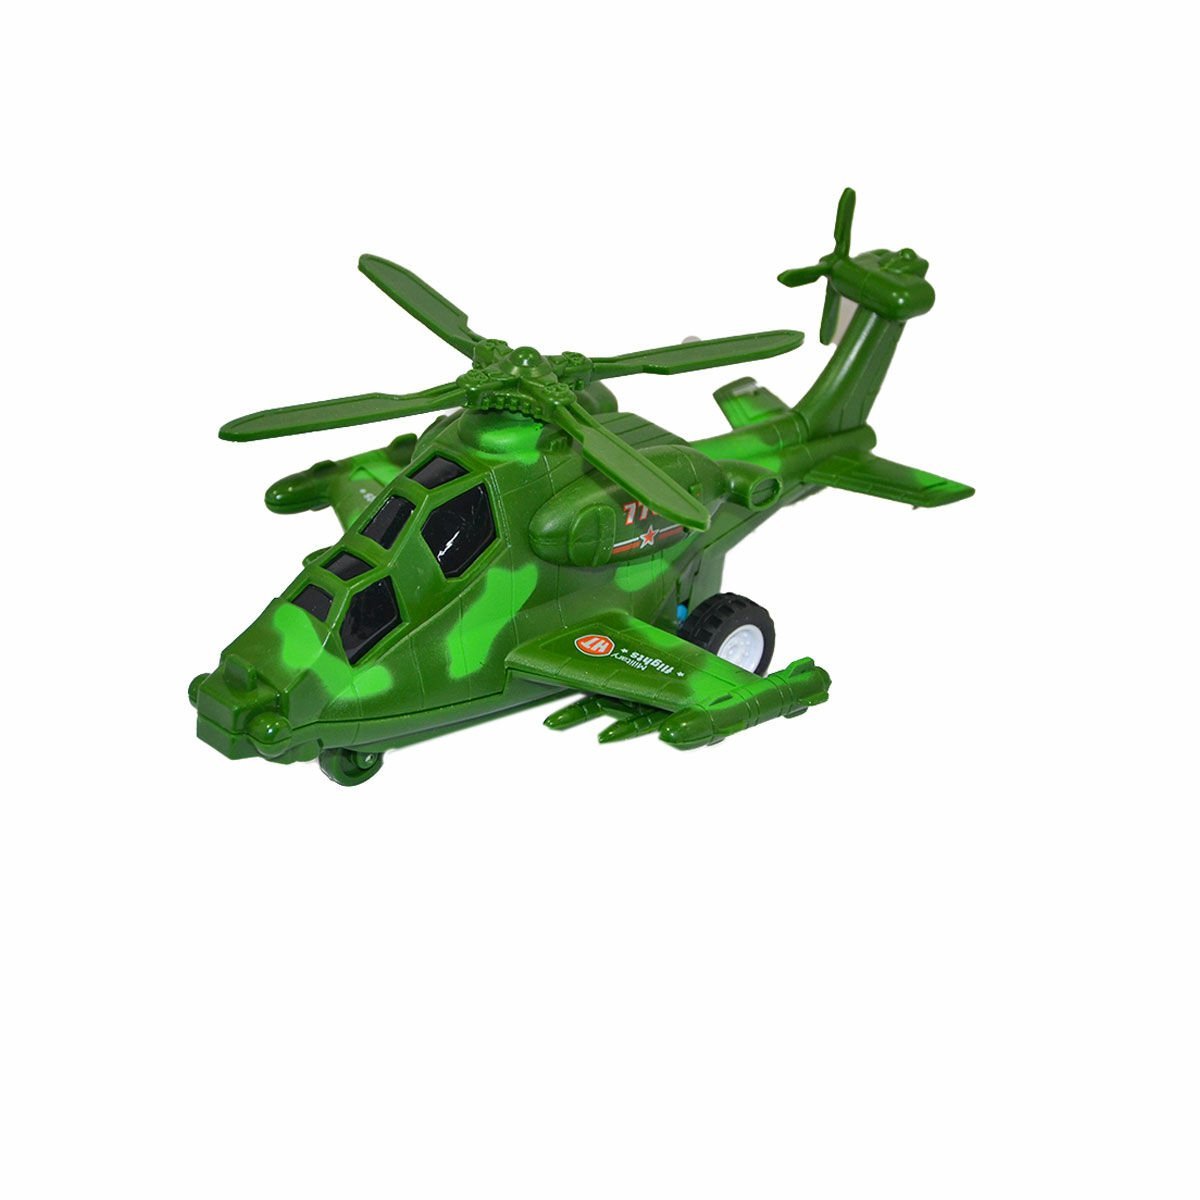 7703 30397319 Sürtmeli Askeri Helikopter - Can-Em Oyuncak